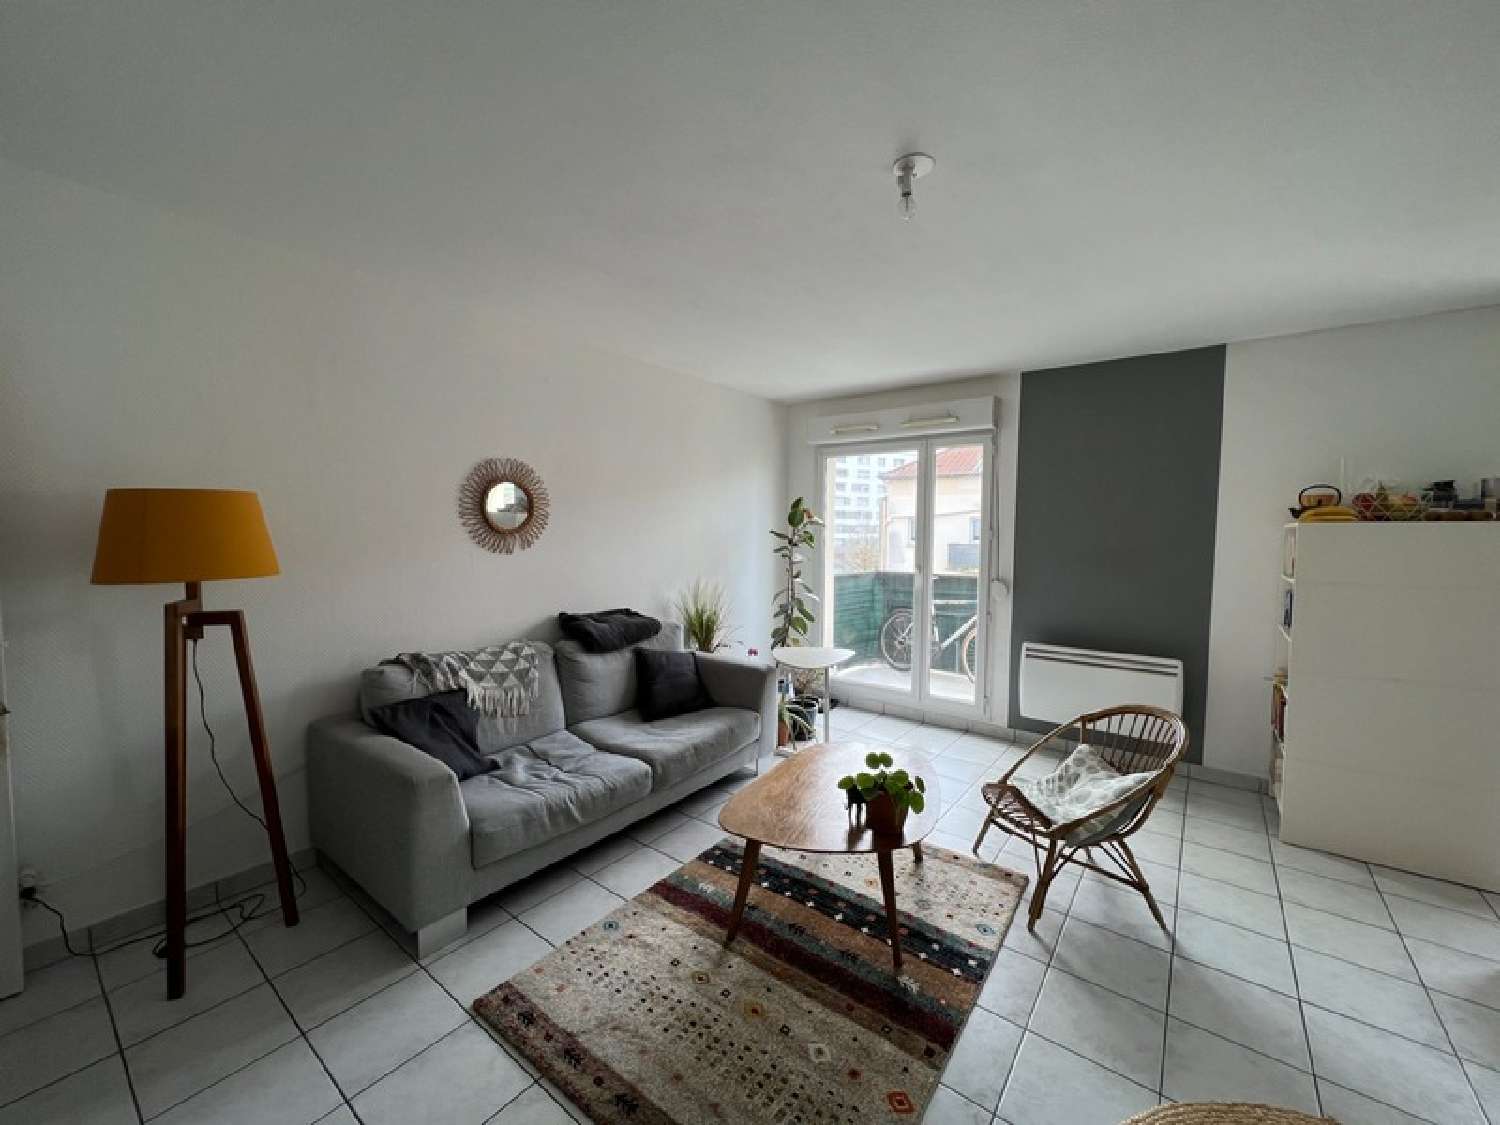  à vendre appartement Essey-lès-Nancy Meurthe-et-Moselle 3